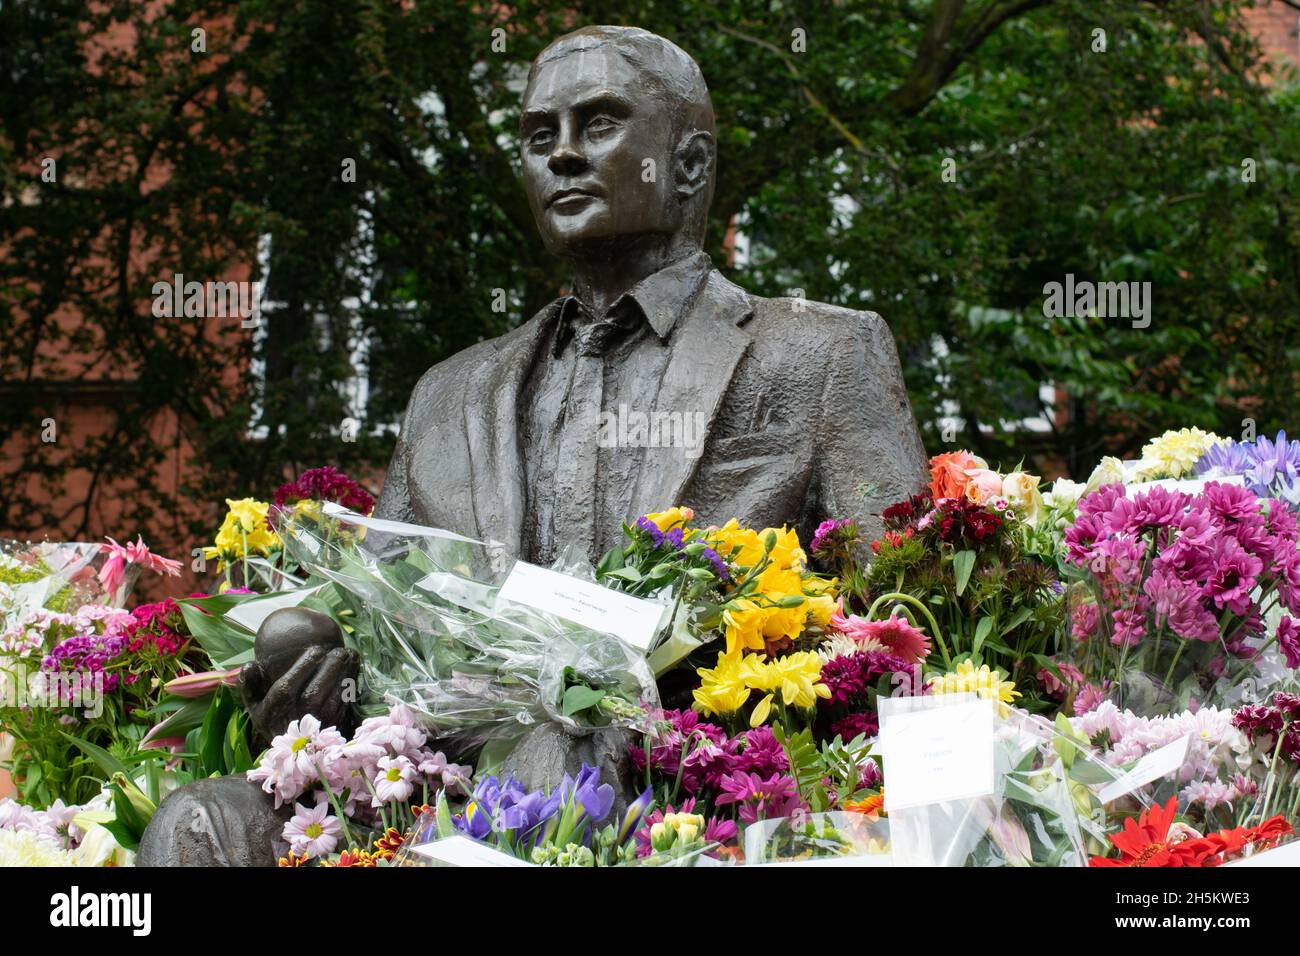 Statue d'Alan Turing entourée de fleurs à son anniversaire.Sackville Gardens, Manchester, Royaume-Uni Banque D'Images